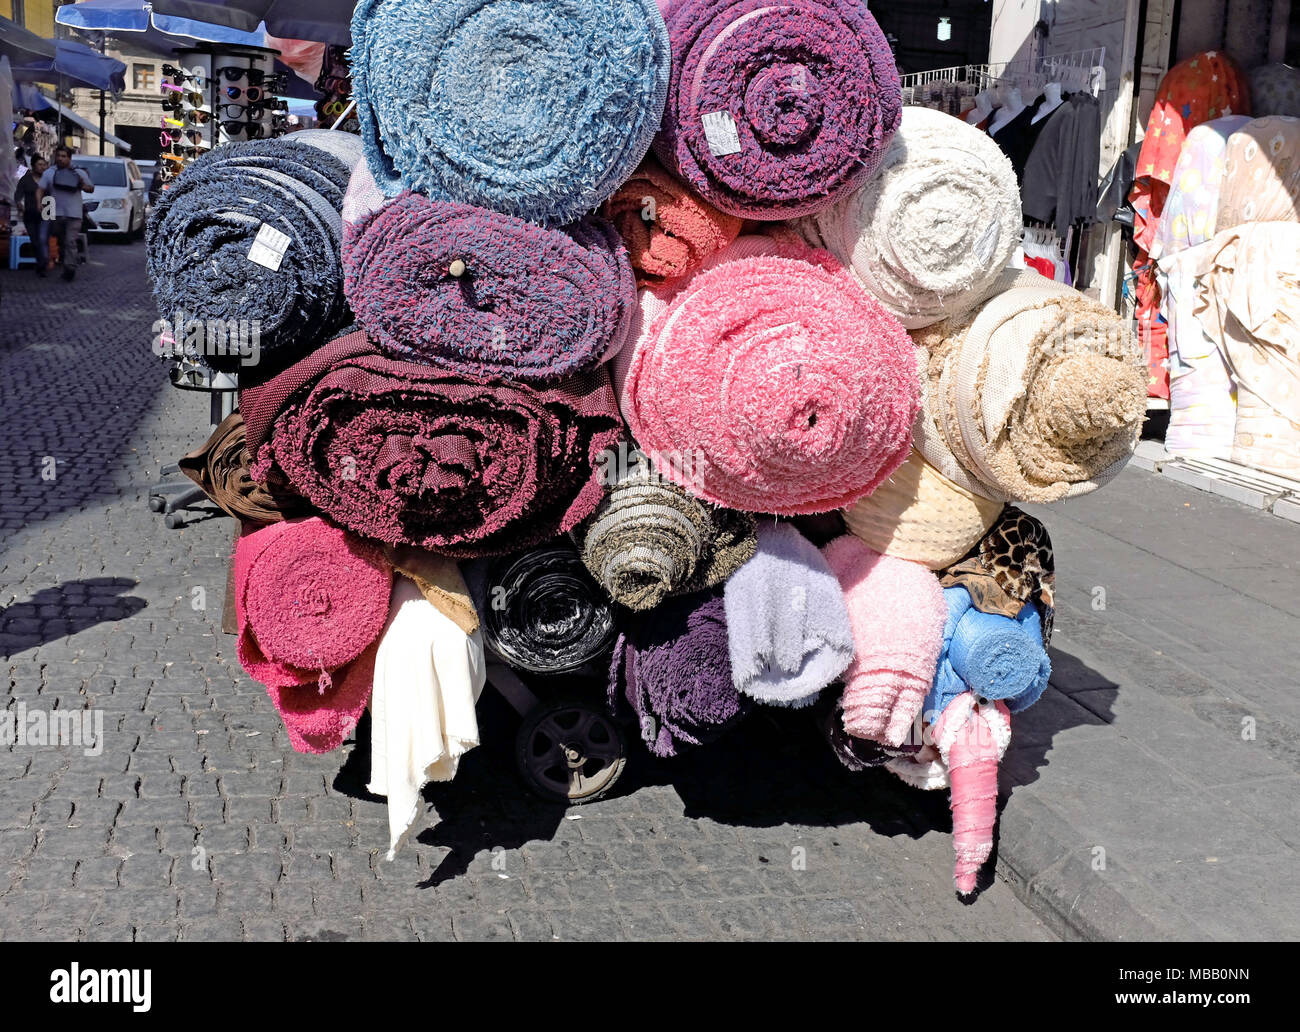 Rouleaux de moquettes sont transportées à travers le marché dans le centre historique de la ville de Mexico, Mexique. Banque D'Images